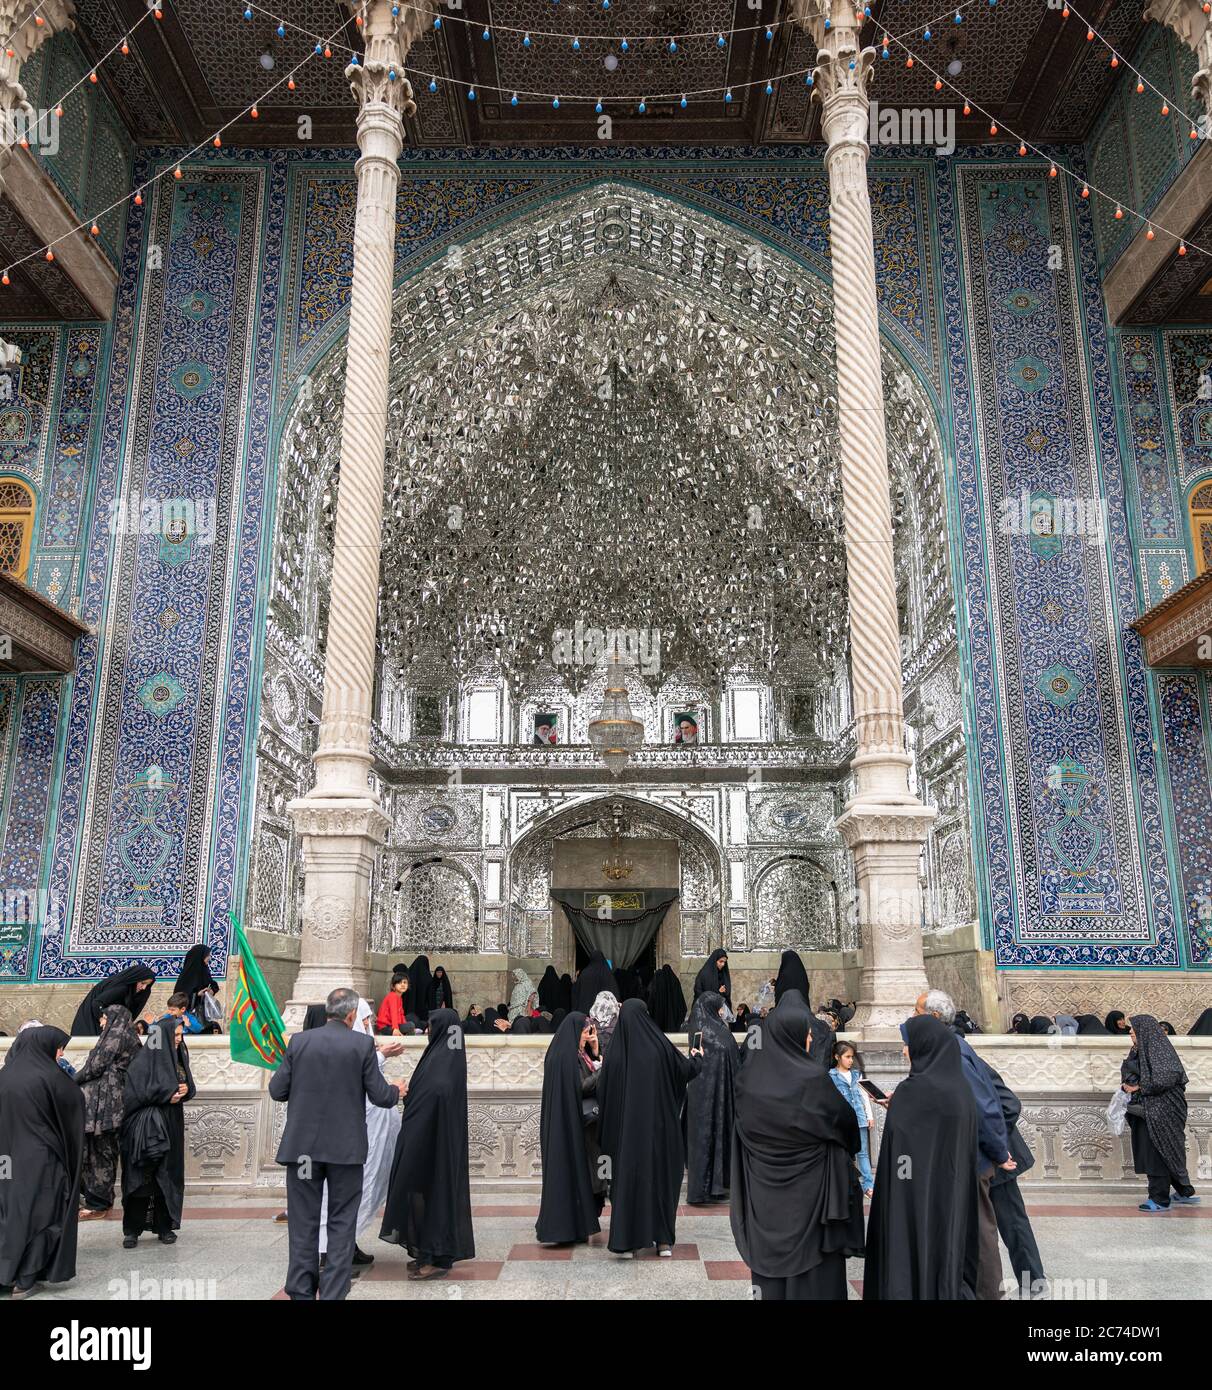 Heiligtum von Fatima Masumeh, Qom, Iran - 2019. Mai: Besucher und Gläubige im Inneren des Heiligtums von Fatima Masumeh in Qom, das von schiitischen Muslimen betrachtet wird Stockfoto